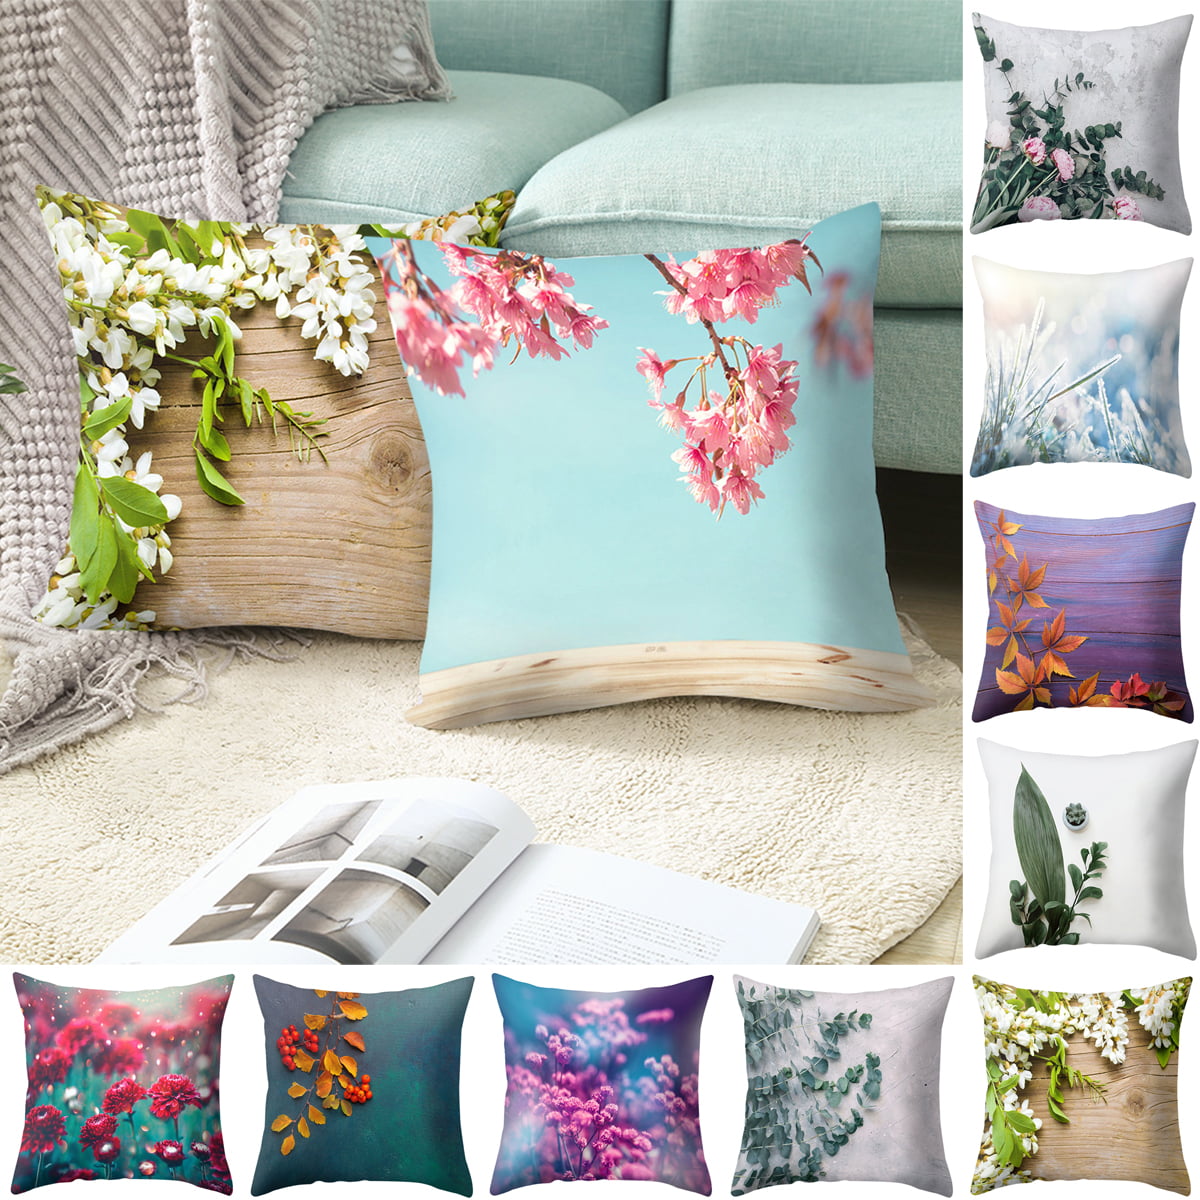 Floral Pattern Square Throw Pillow Cover Case Cushion Home Sofa Car Decor Cheap 